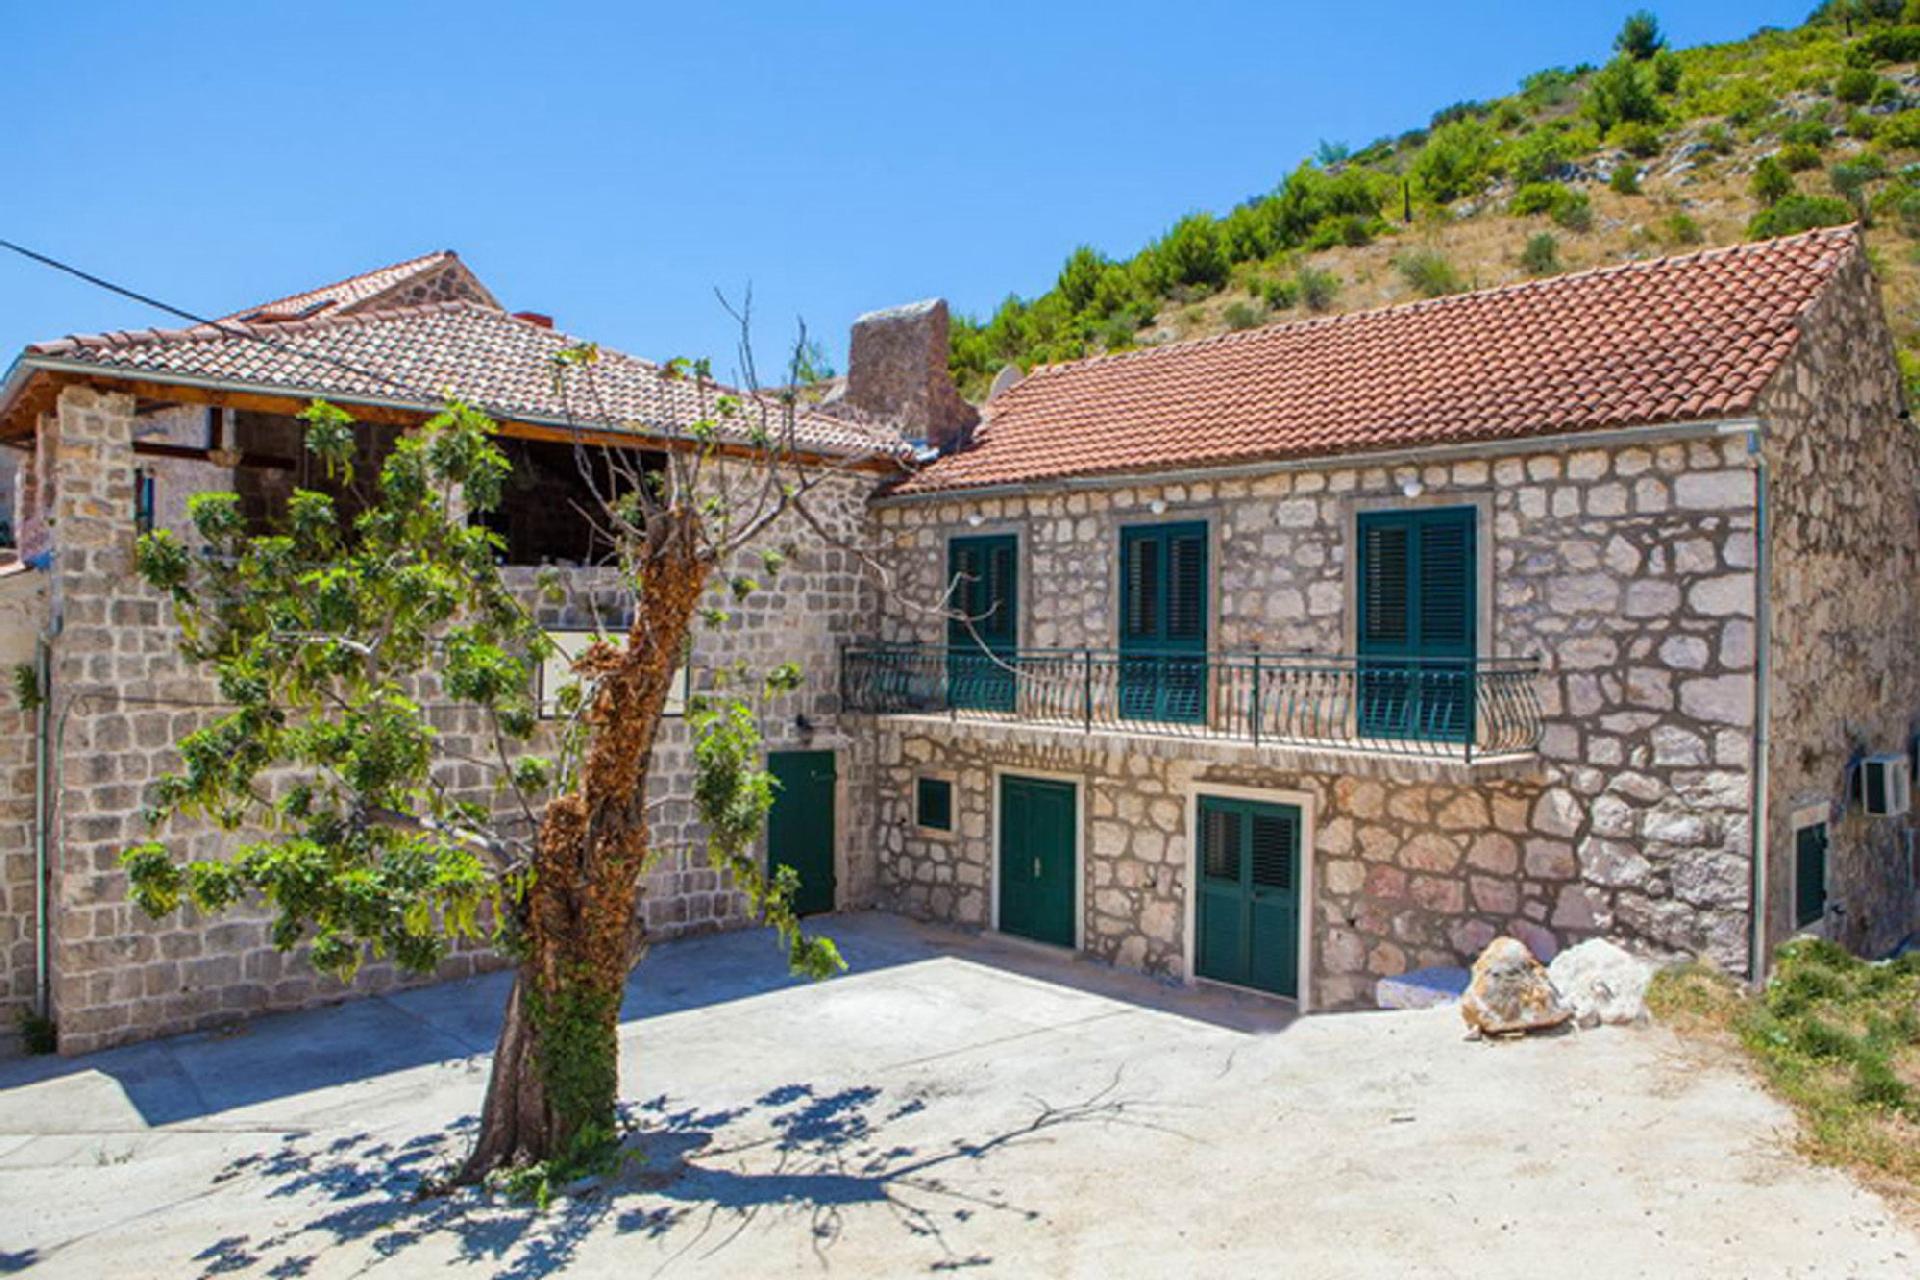 Ferienwohnung für 6 Personen ca. 75 m² i  in Kroatien